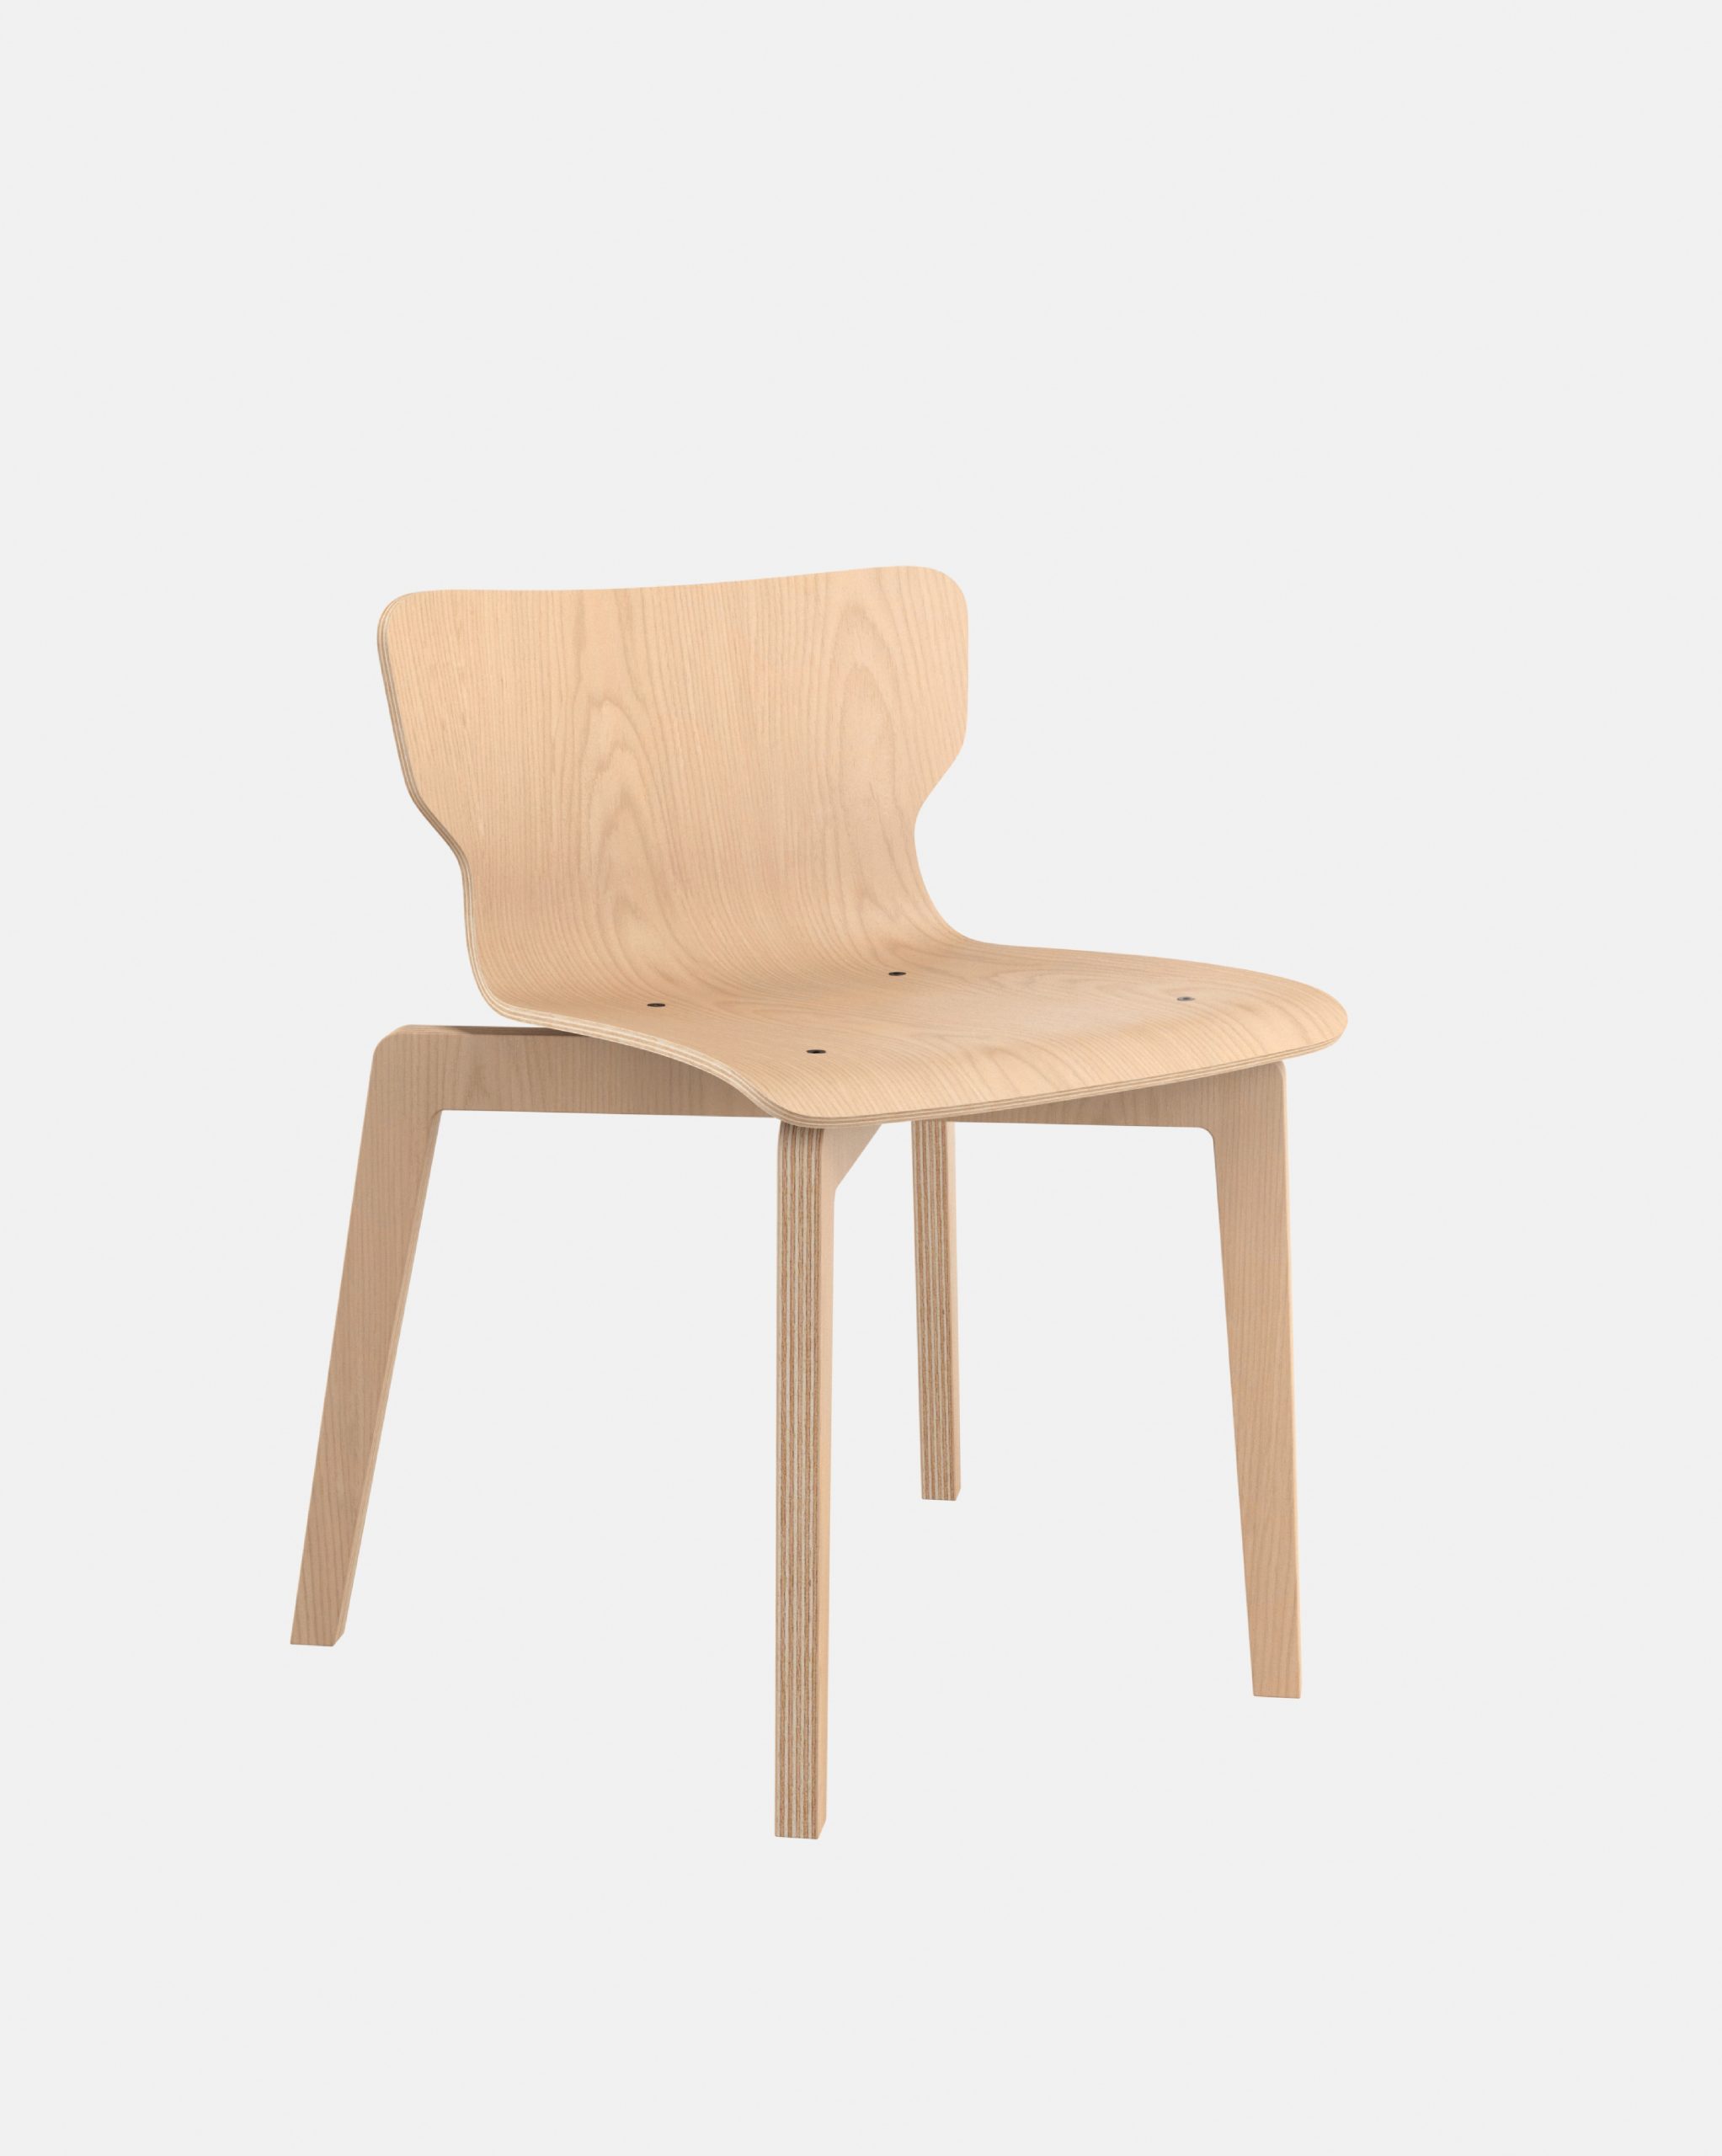 Chaise empilable - chaise bois français naturel - chaise éco conception